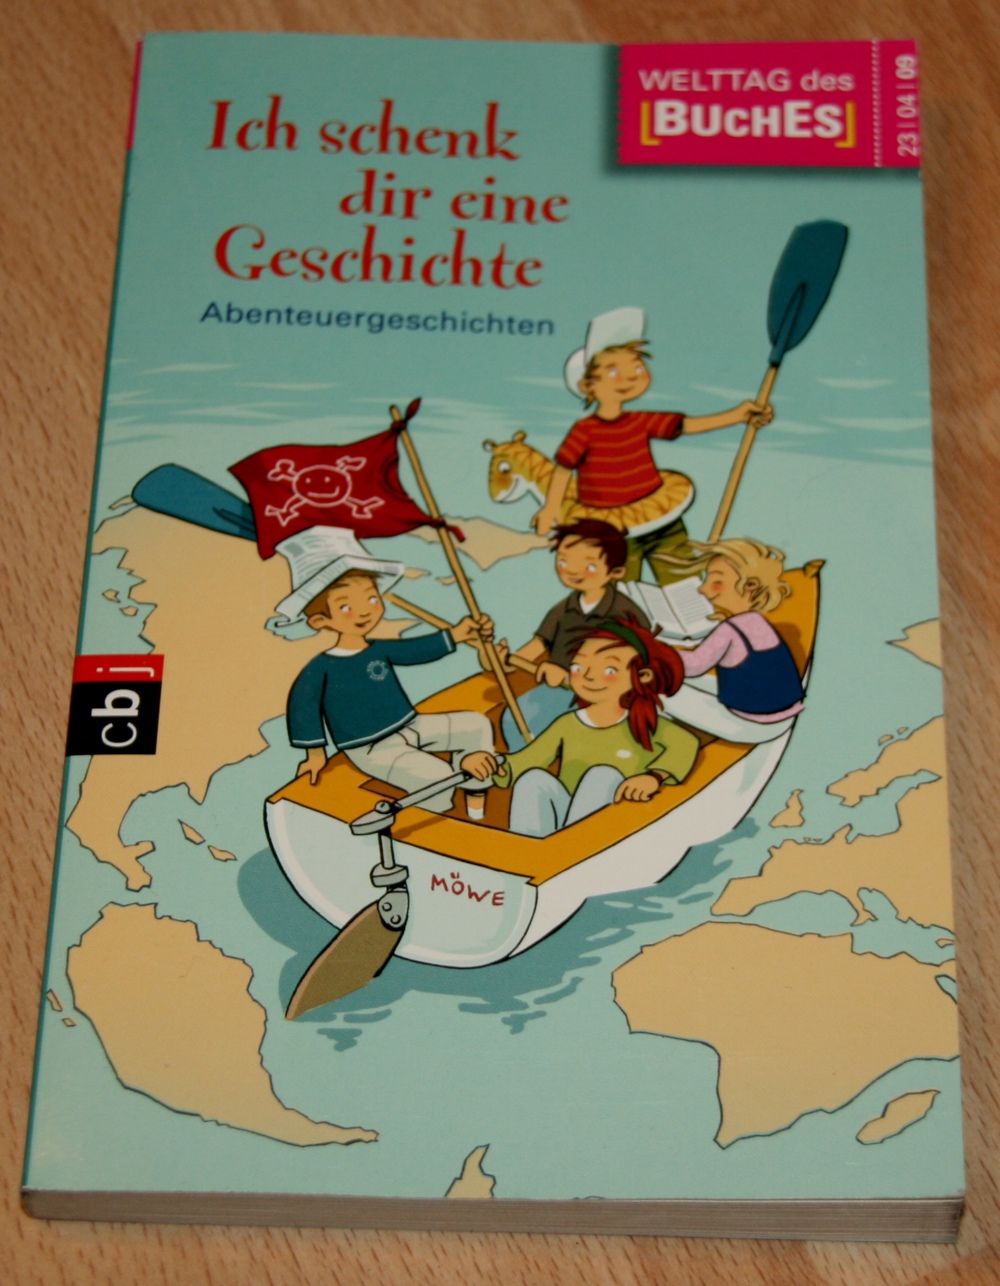 Kinder-Buch - "Ich schenk dir eine Geschichte" - aus 2009